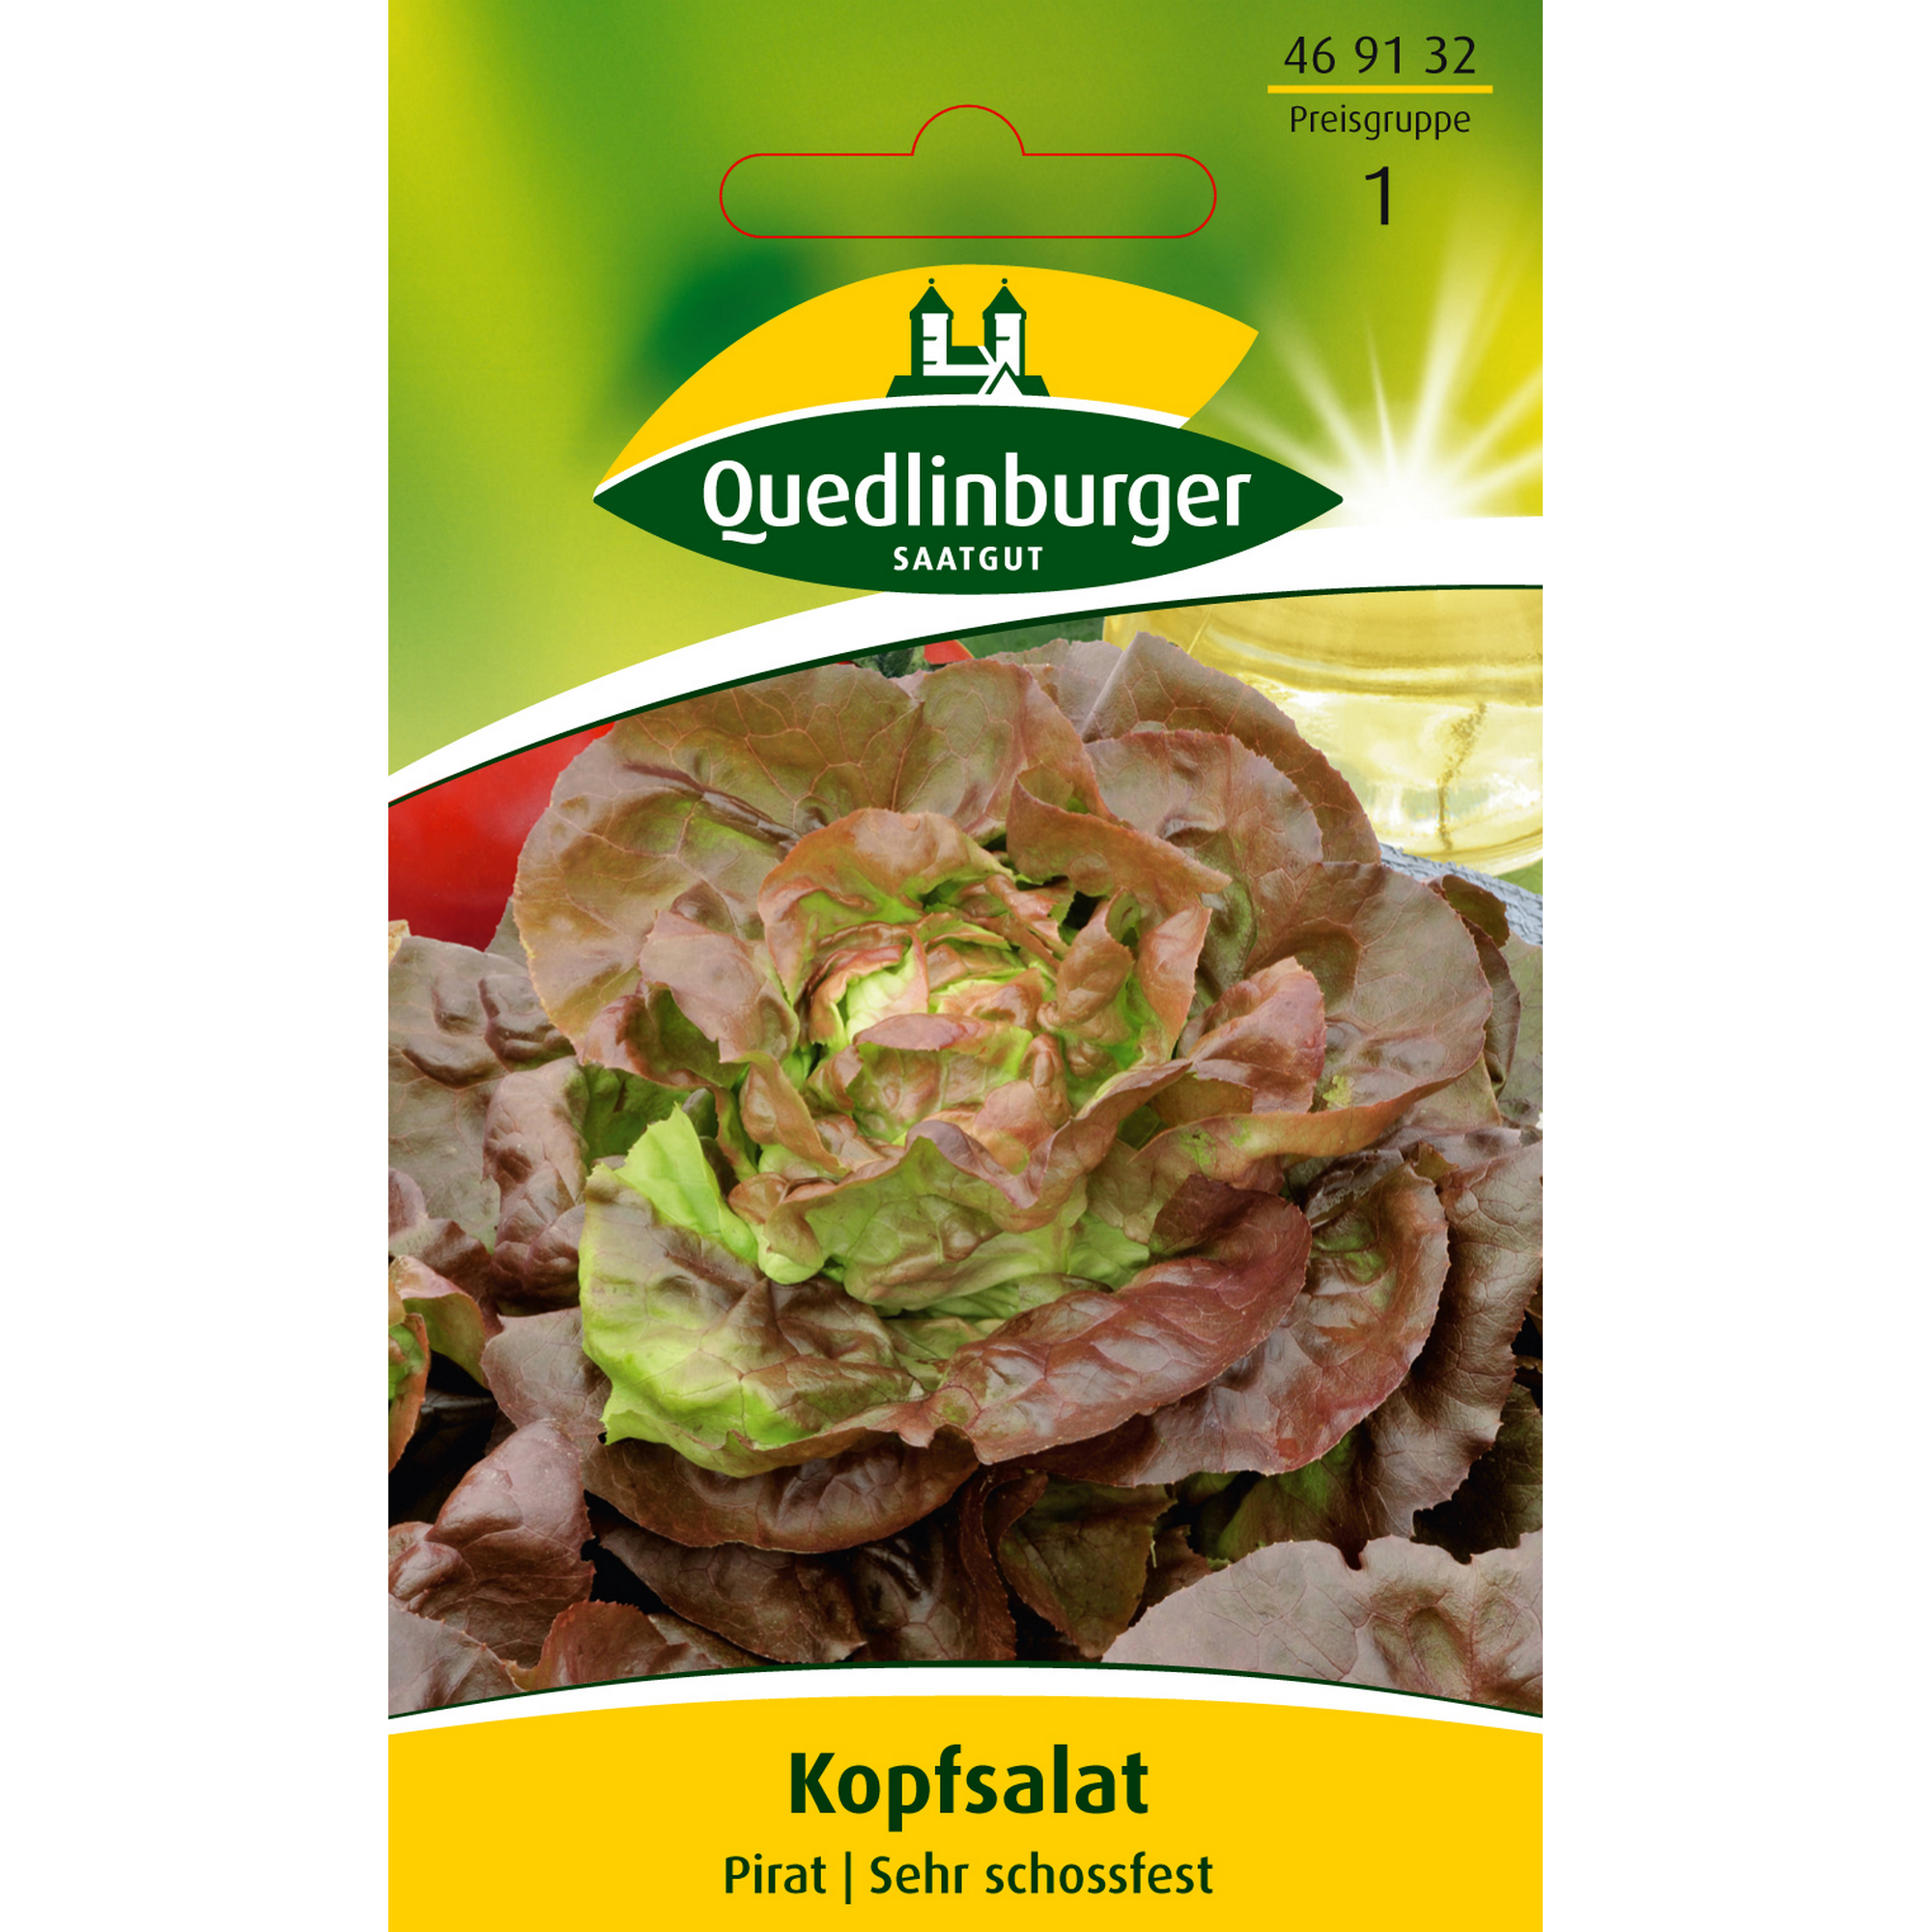 Kopfsalat 'Pirat' + product picture